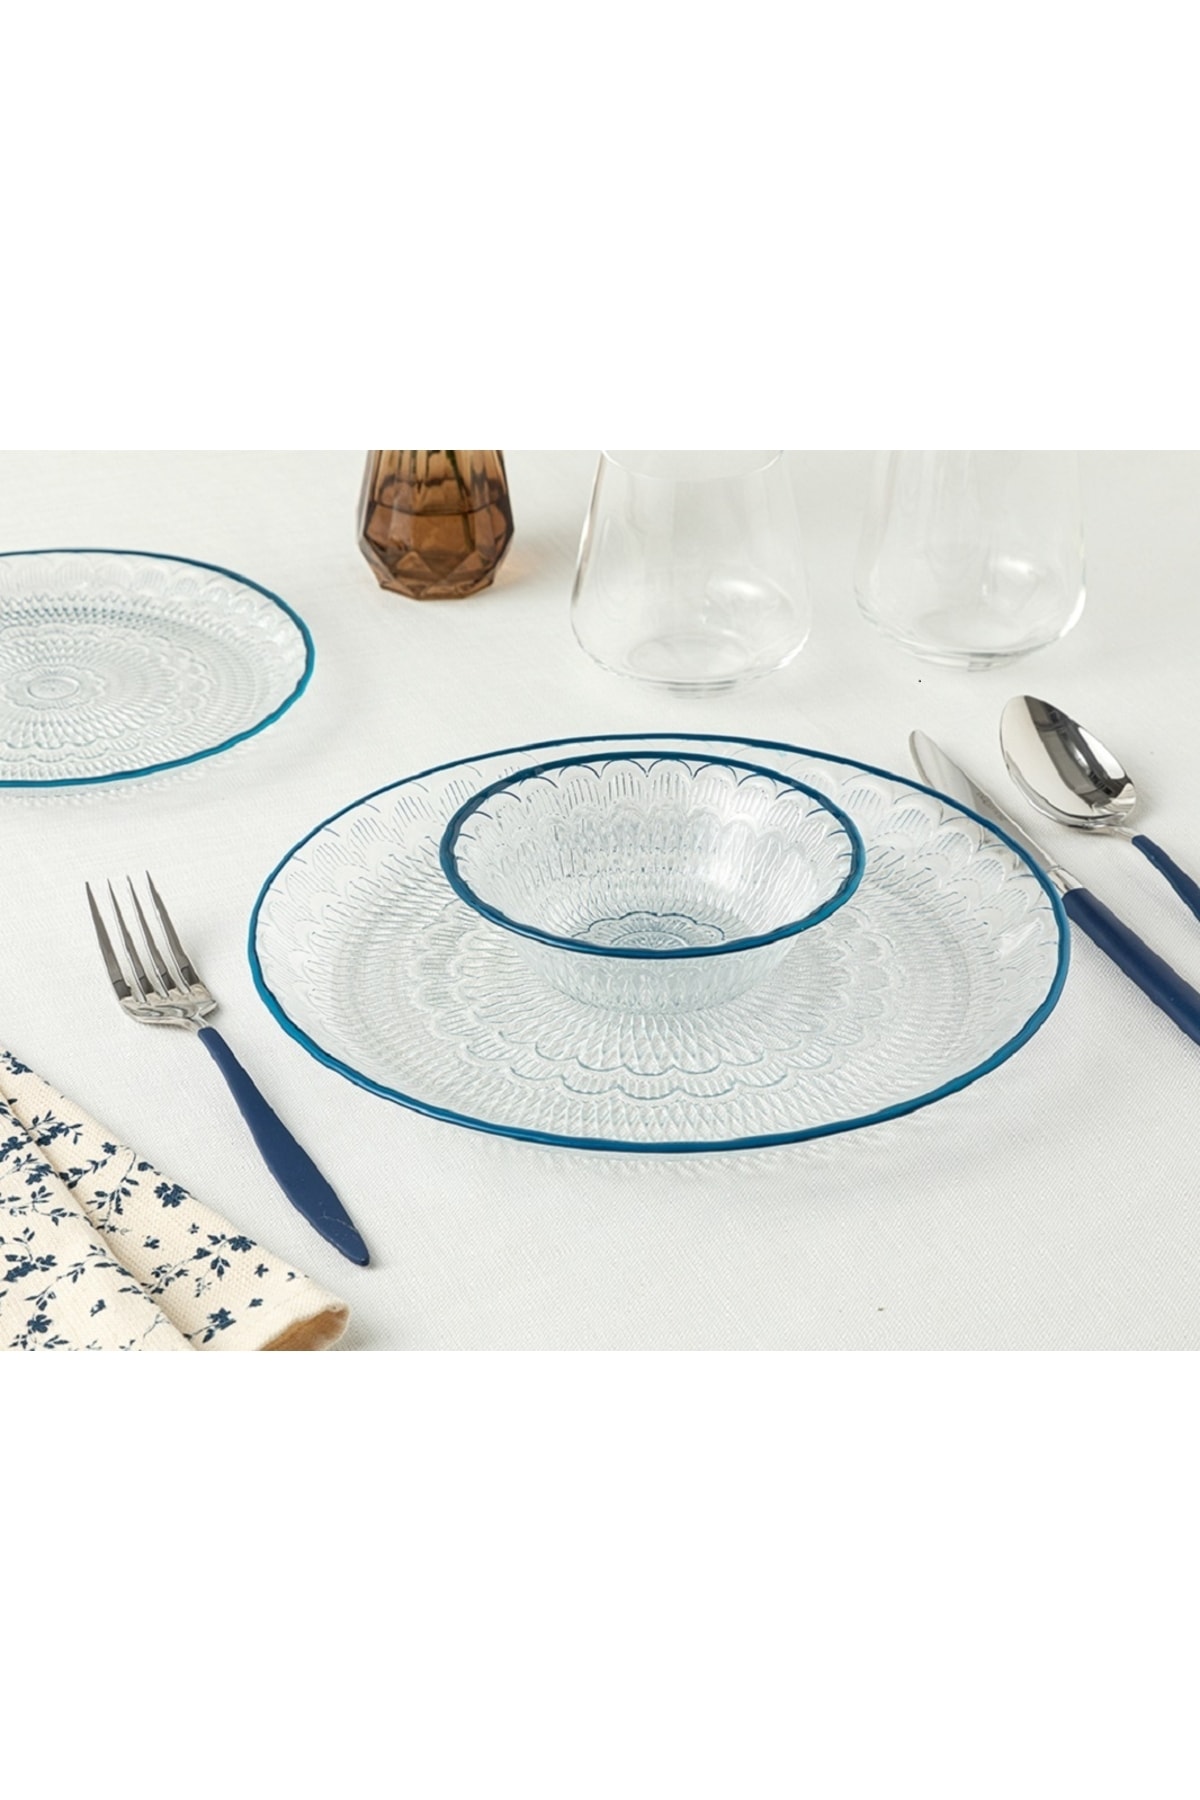 ست ظروف غذاخوری شیشه ای مدل نوون گلس لبه رنگی 6 تیکه انگلیش هوم English Home